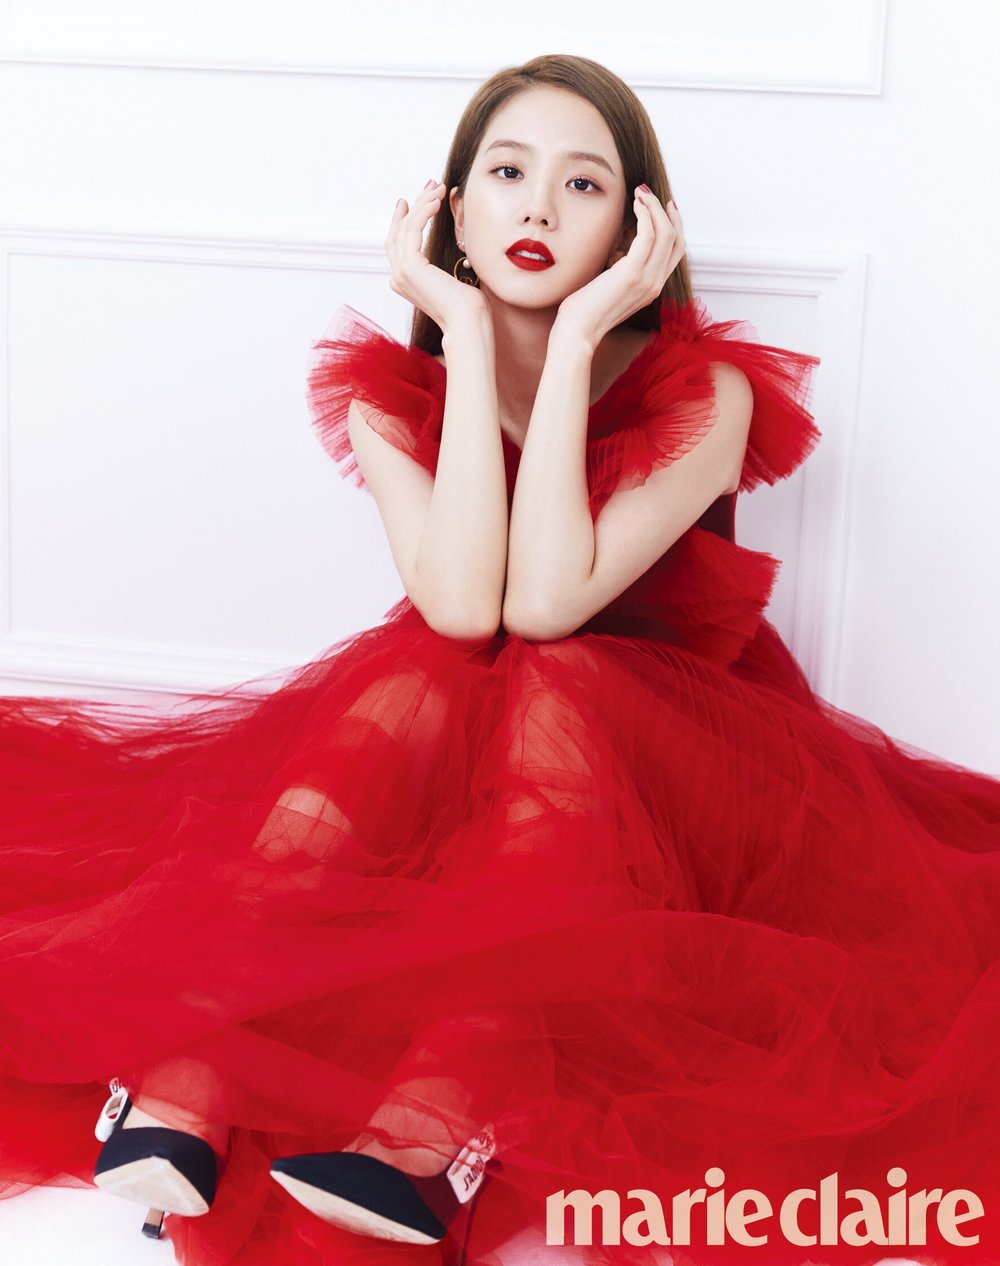 
Jisoo trắng phát sáng trong bộ váy đỏ lộng lẫy trên tạp chí Marie Claire. (Ảnh: Allkpop)